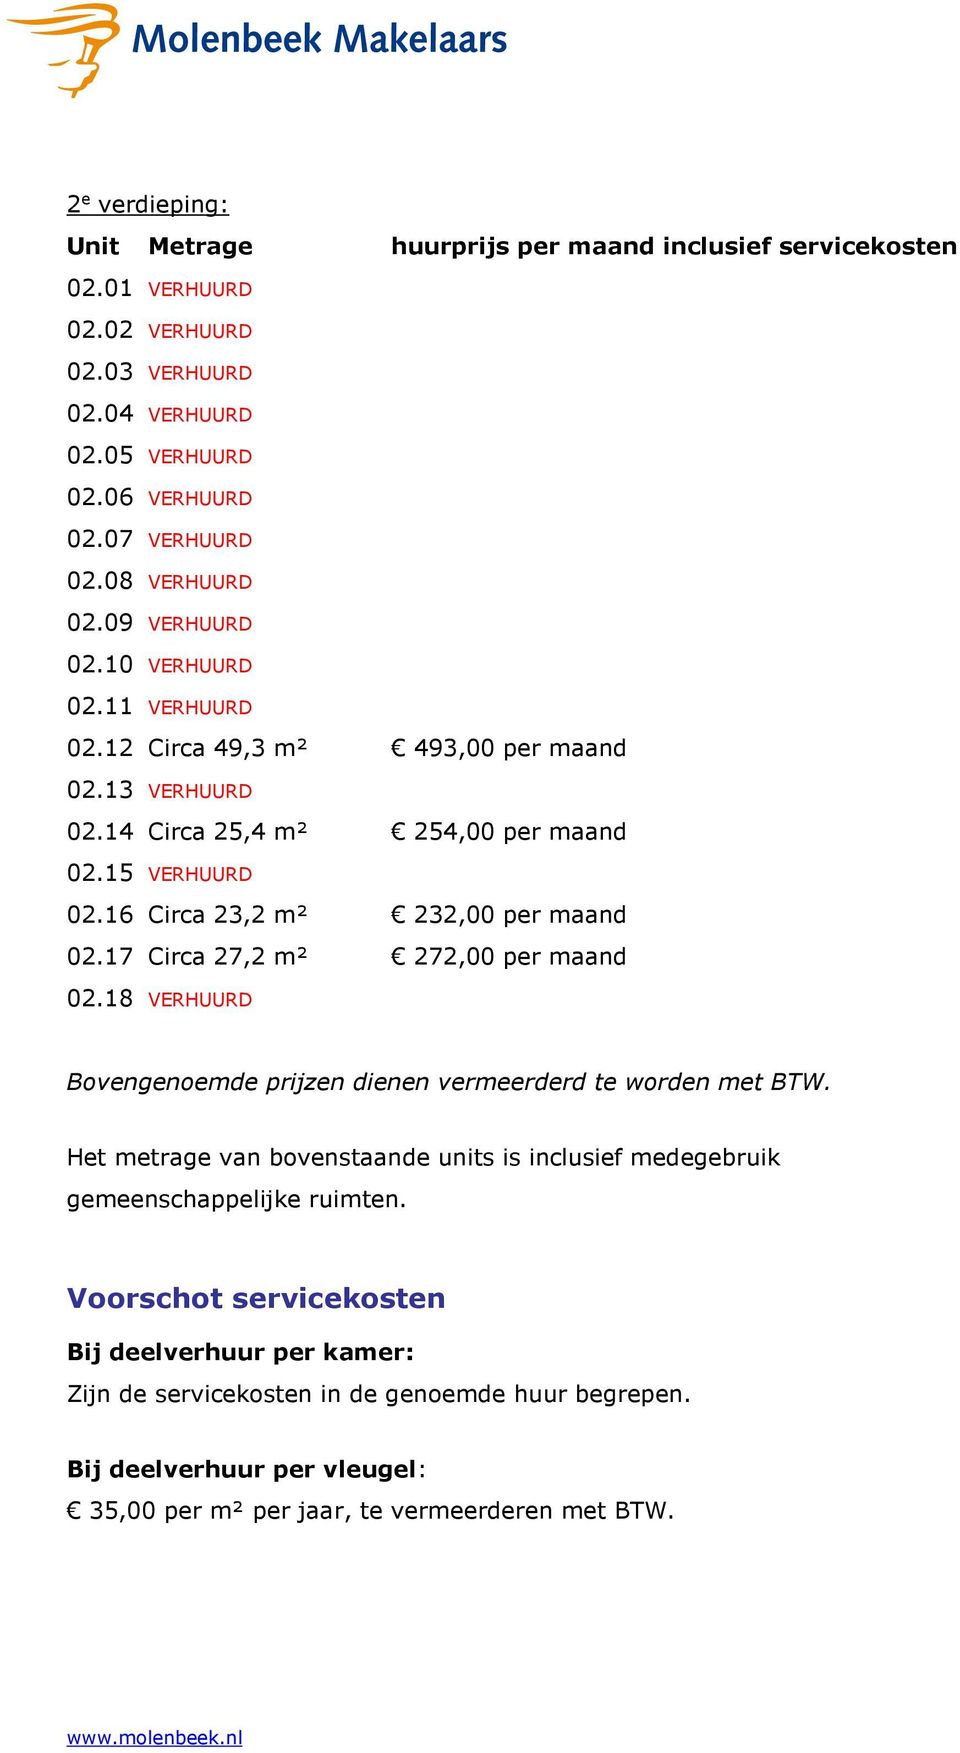 17 Circa 27,2 m² 272,00 per maand 02.18 Bovengenoemde prijzen dienen vermeerderd te worden met BTW.